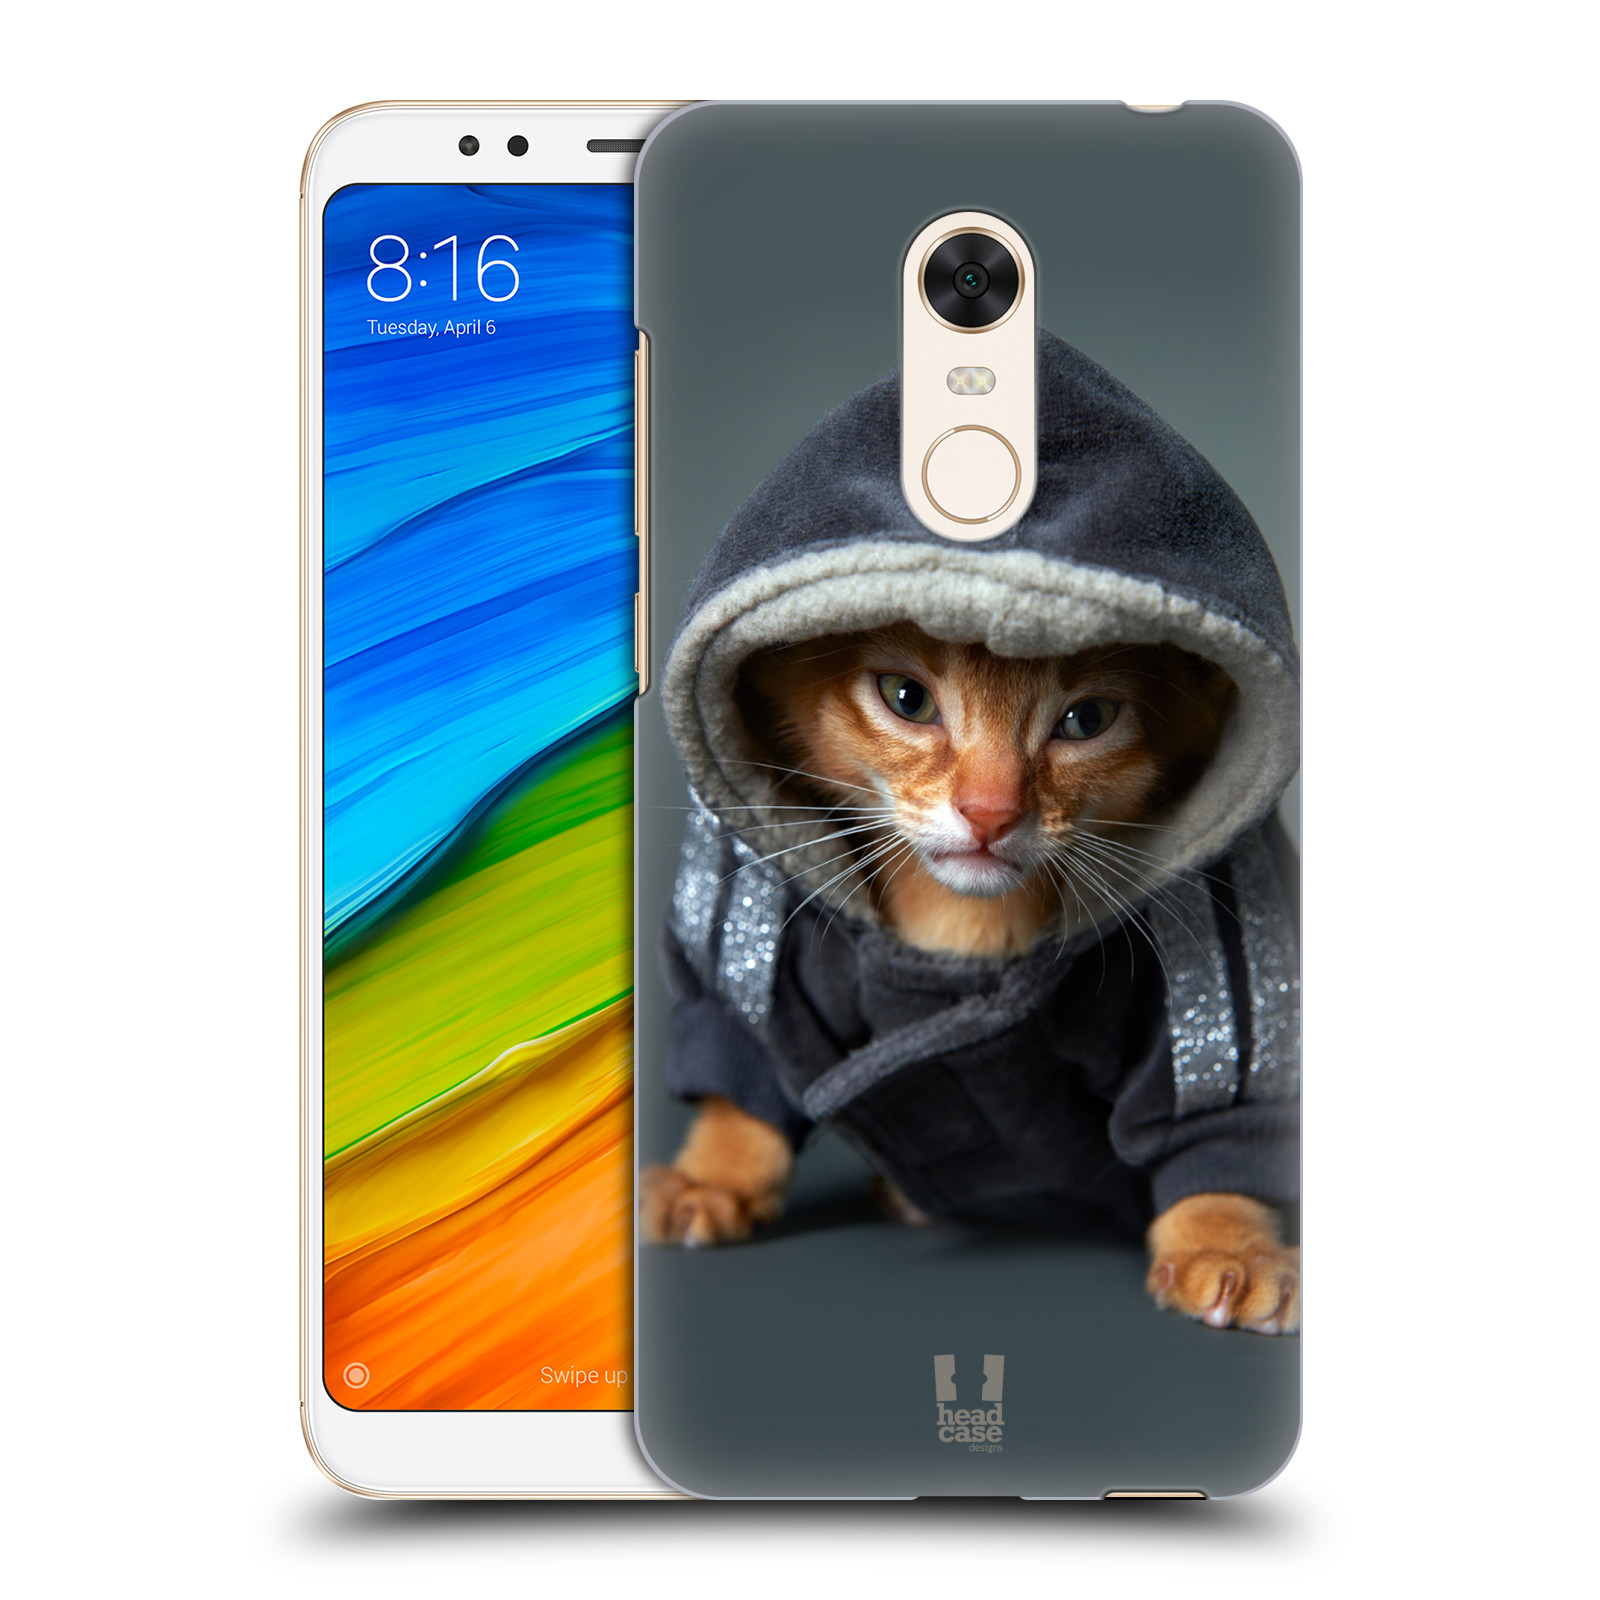 HEAD CASE plastový obal na mobil Xiaomi Redmi 5 PLUS vzor Legrační zvířátka kotě/kočička s kapucí